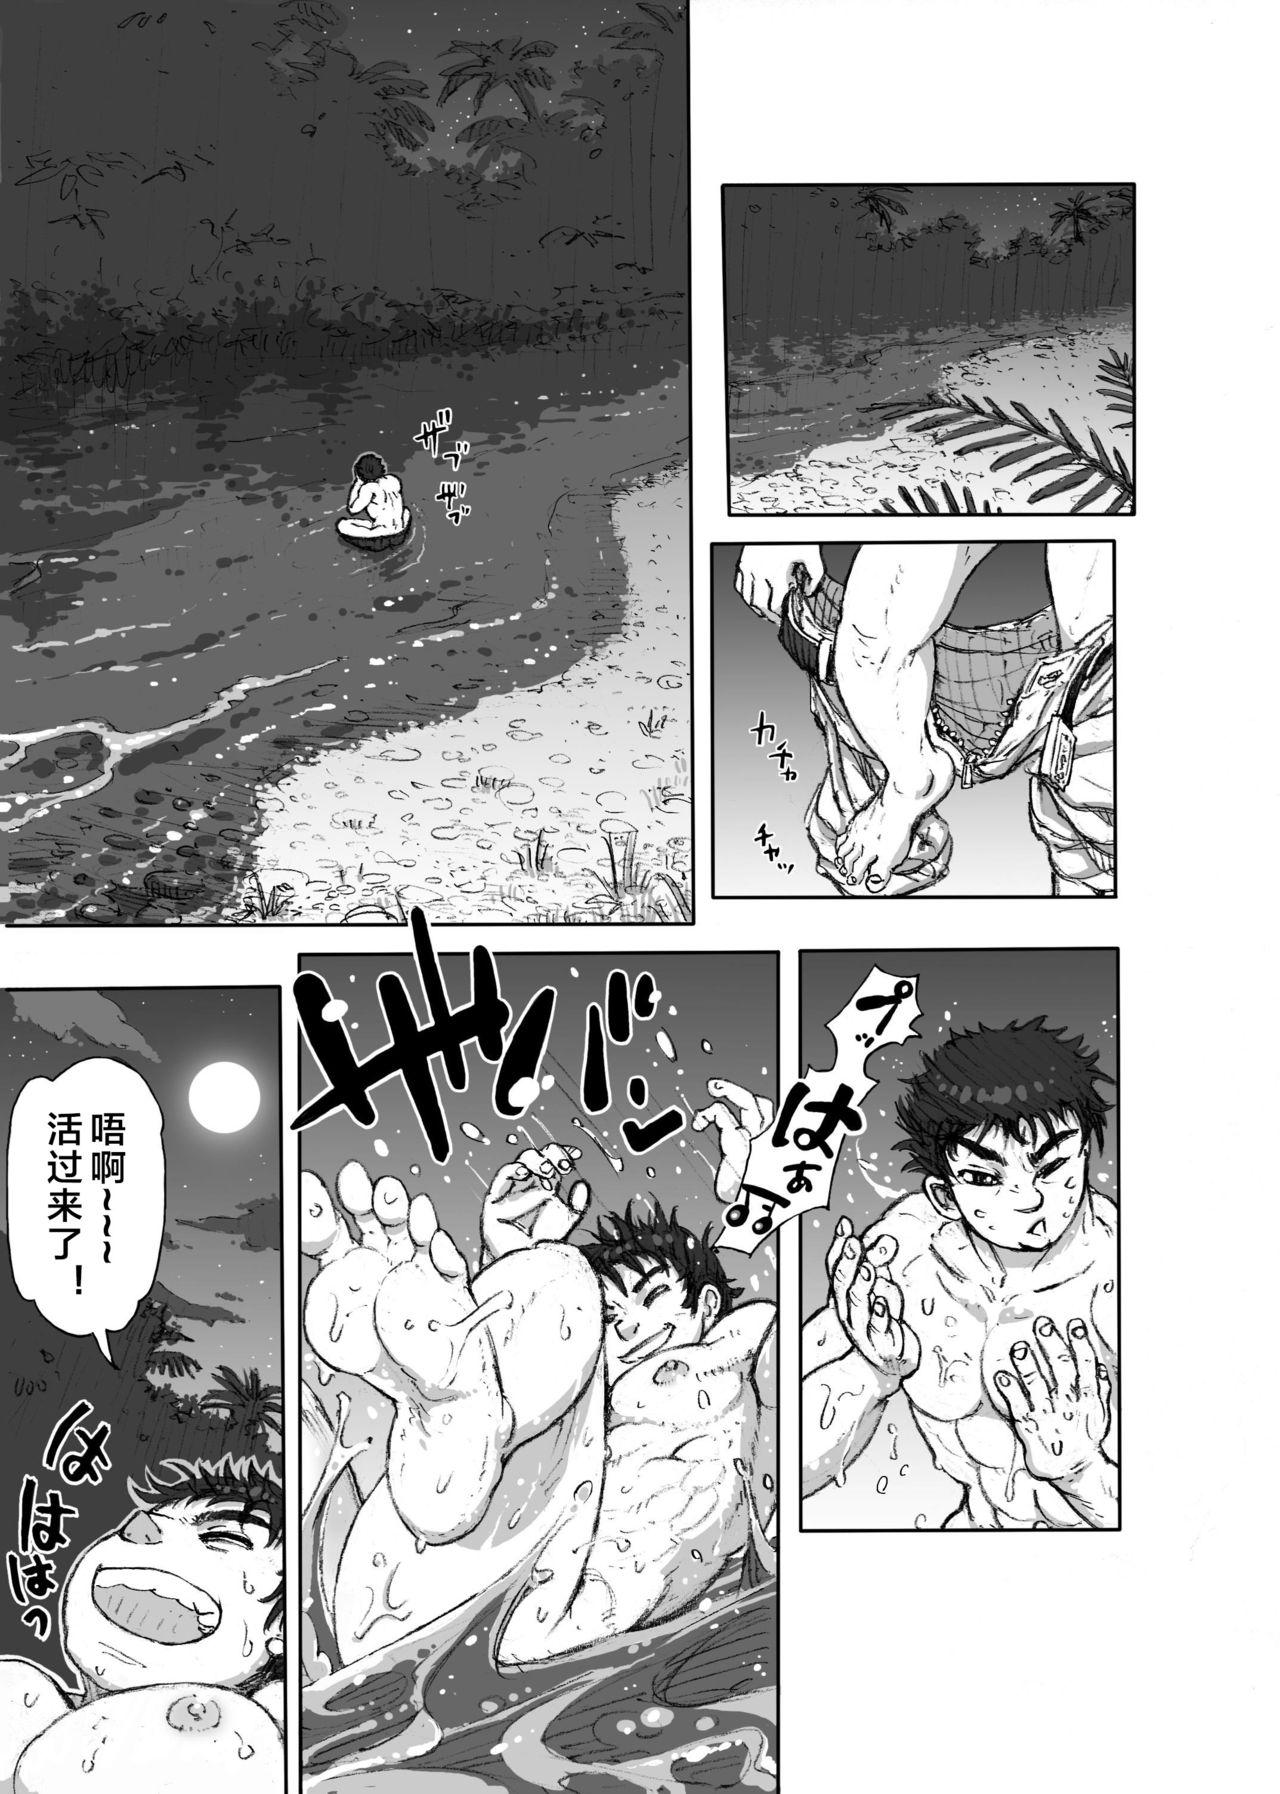 Web Hepoe no Kuni kara 1 - Mizu no Gakusha Sensei, Hi no Buzoku no Saru ni Hazukashimerareru no Maki Defloration - Page 5